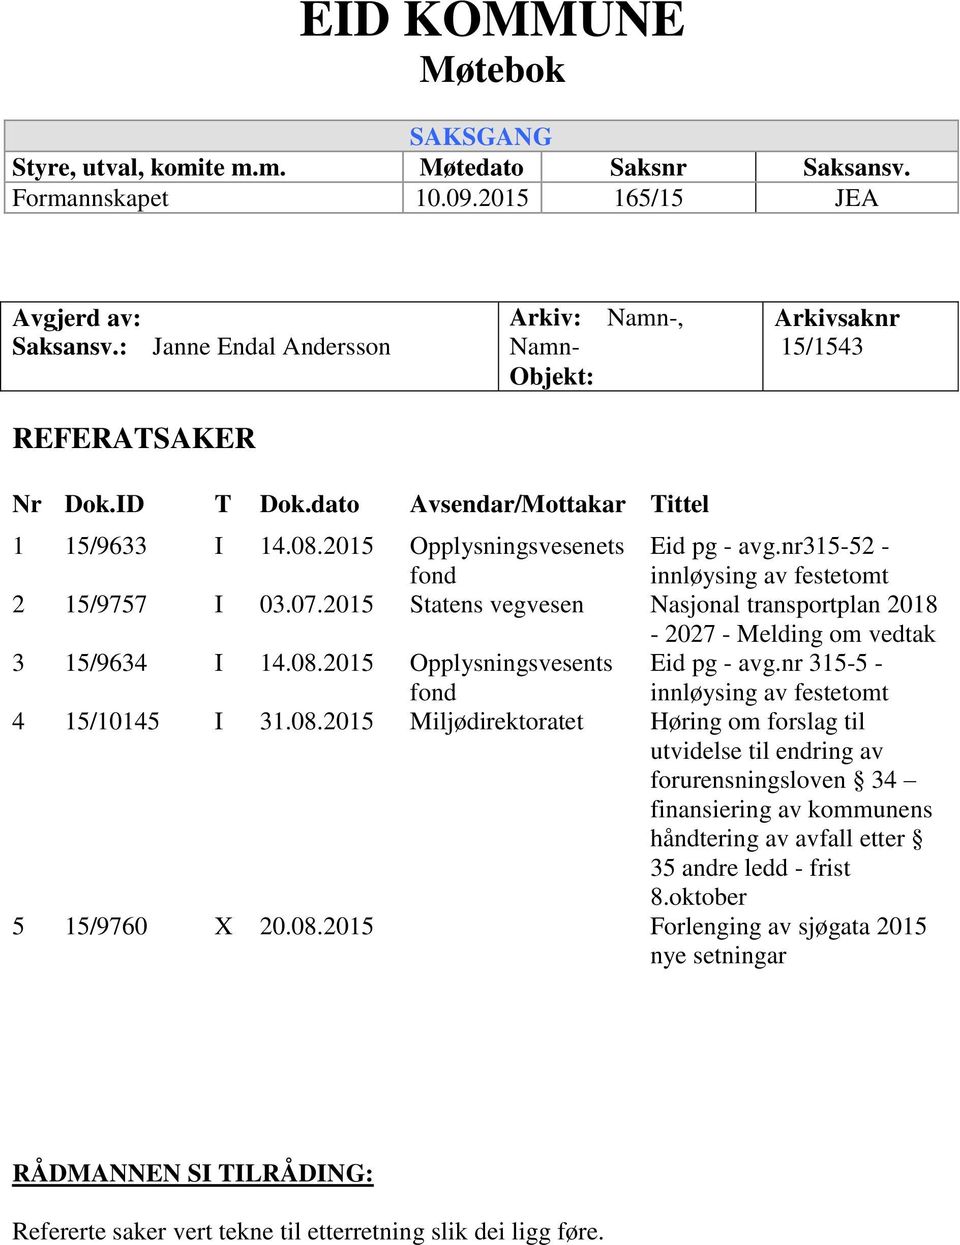 nr315-52 - innløysing av festetomt 2 15/9757 I 03.07.2015 Statens vegvesen Nasjonal transportplan 2018-2027 - Melding om vedtak 3 15/9634 I 14.08.2015 Opplysningsvesents fond Eid pg - avg.